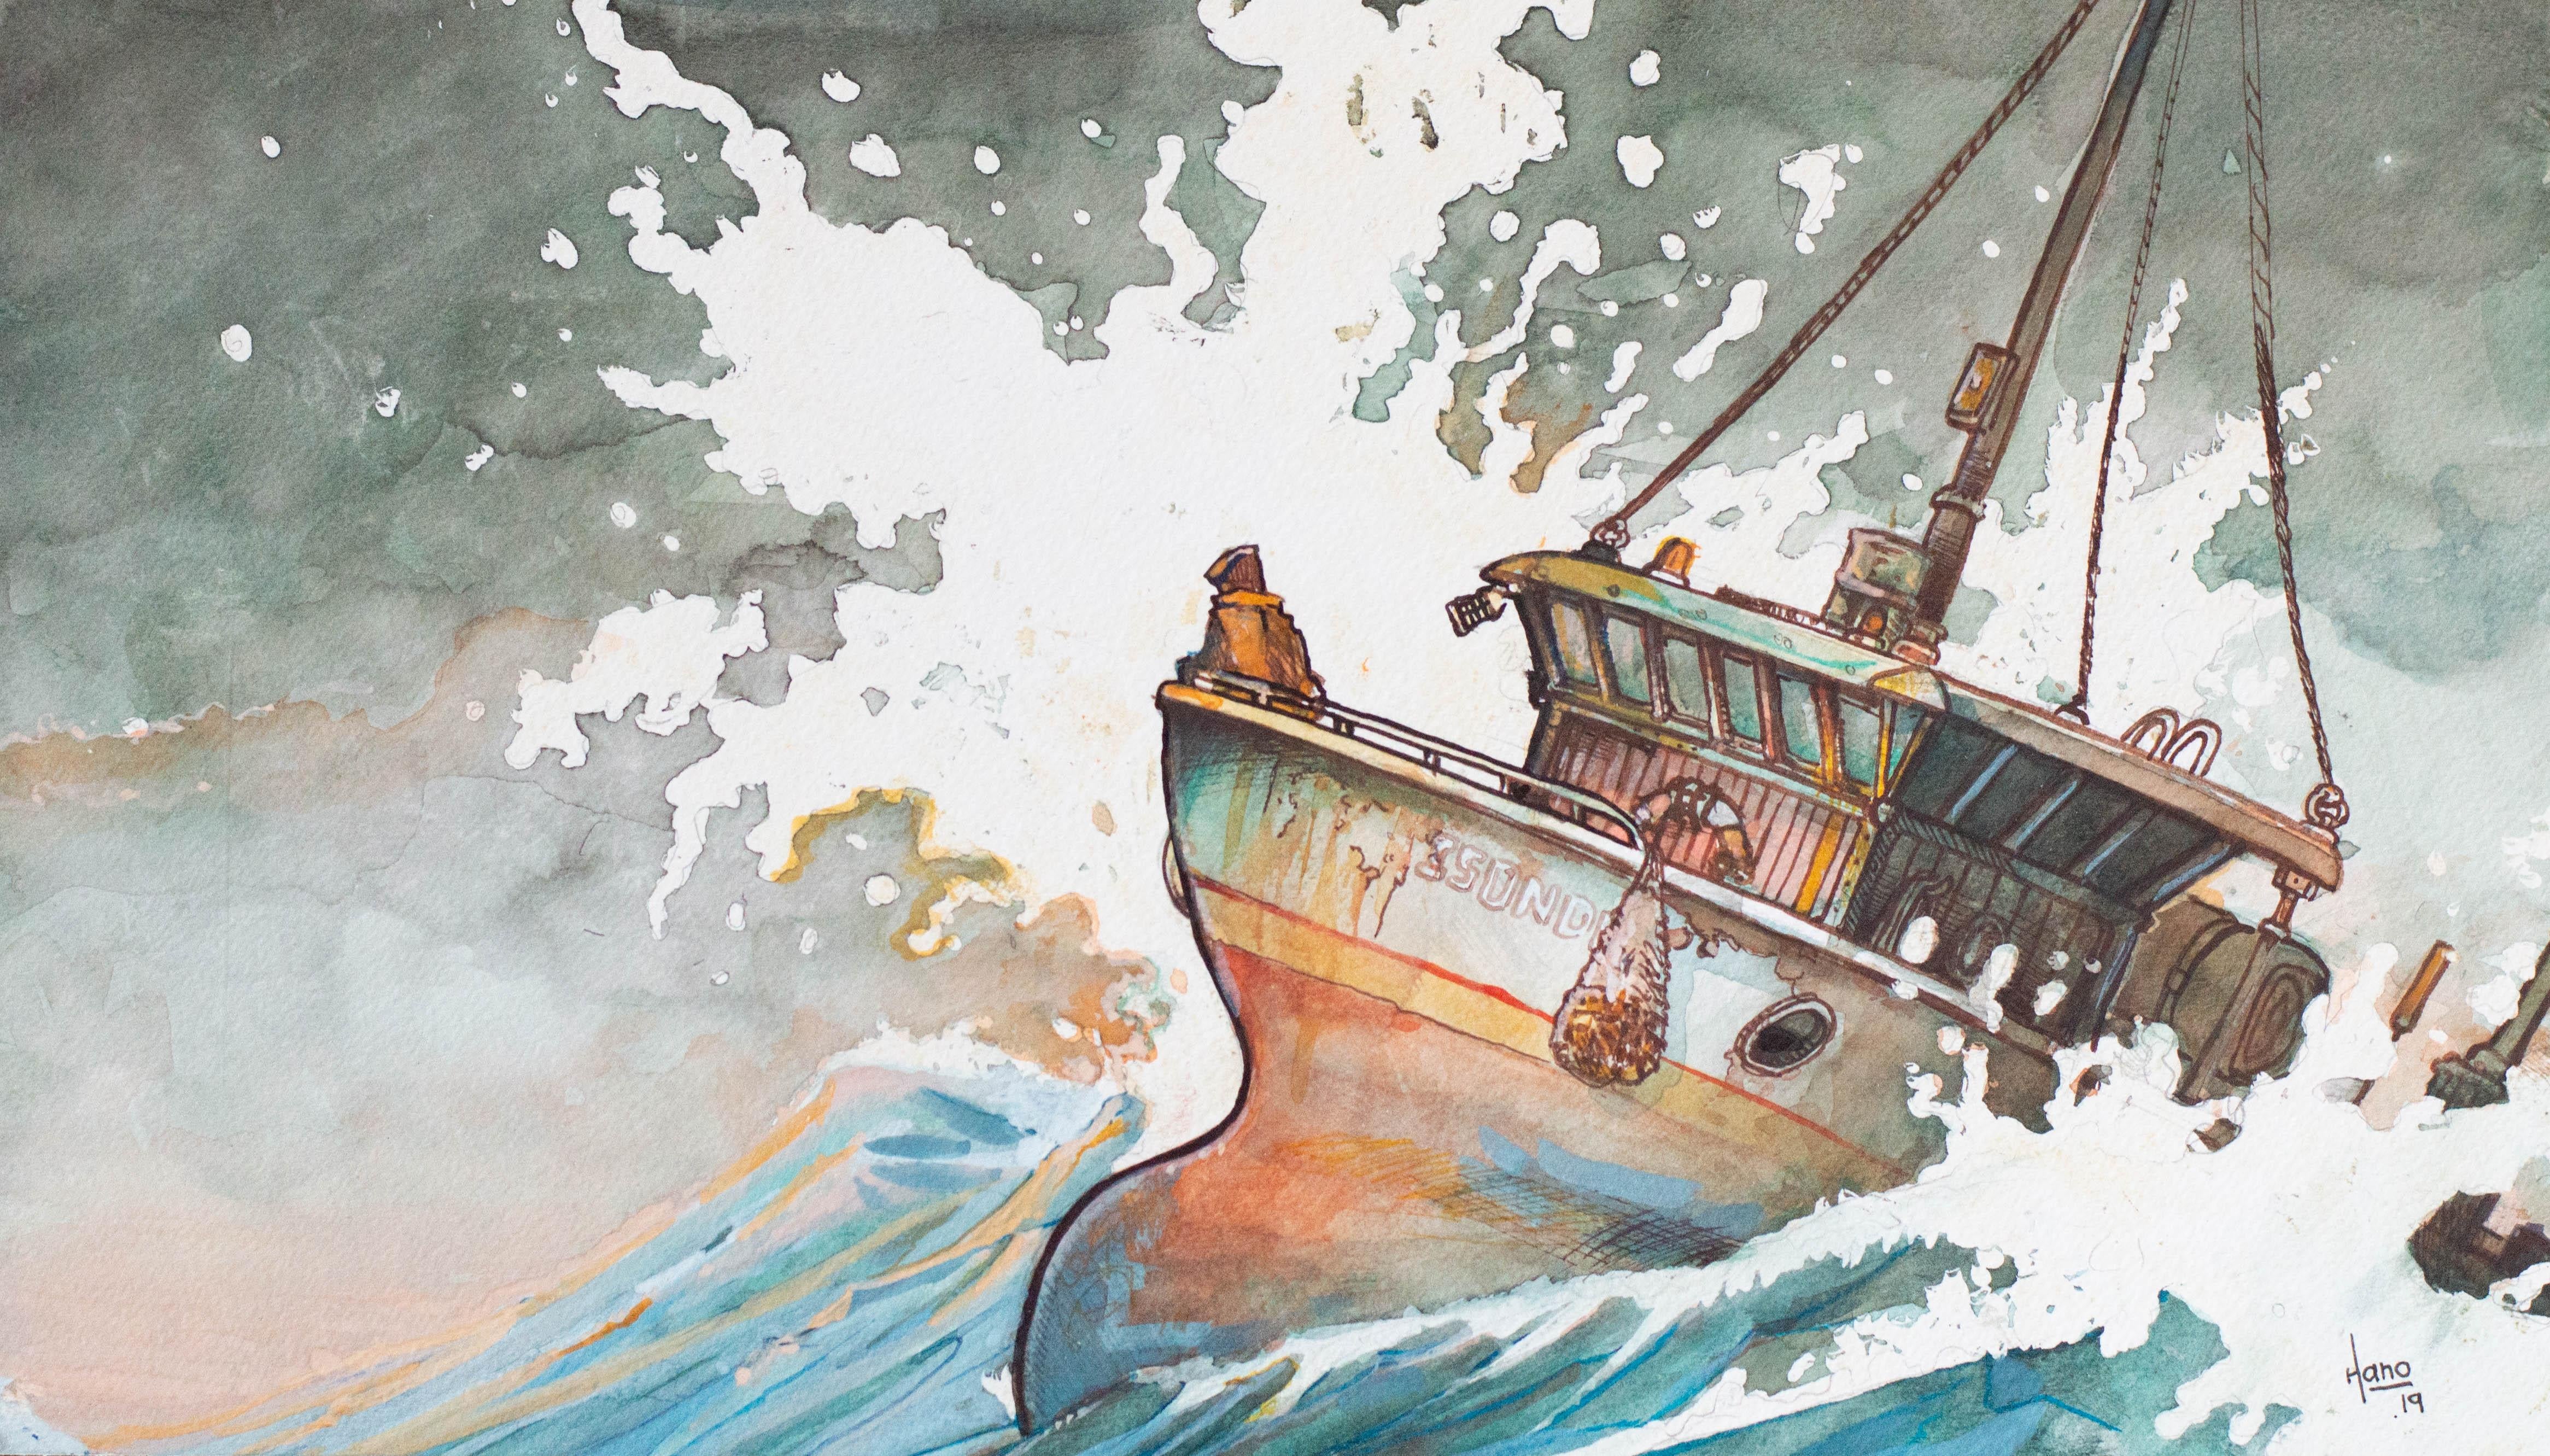 Fishing Boat, 3, Original Painting - Mixed Media Art by Hano Dercksen